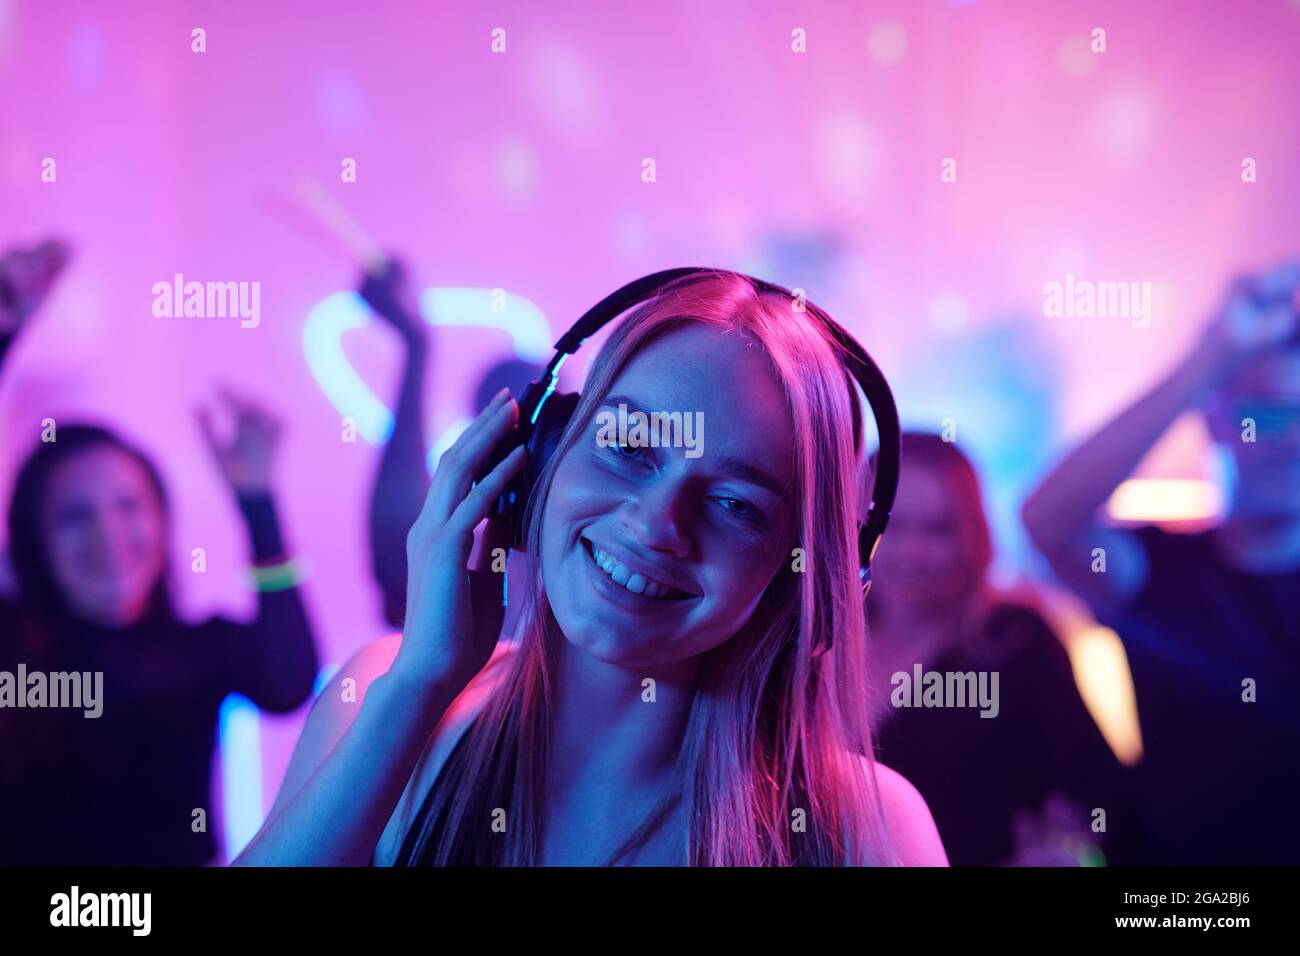 Jeune femme gaie avec de longs cheveux blonds se prenant les doigts pendant écouter de la musique dans un casque devant la foule dansante à fête Banque D'Images